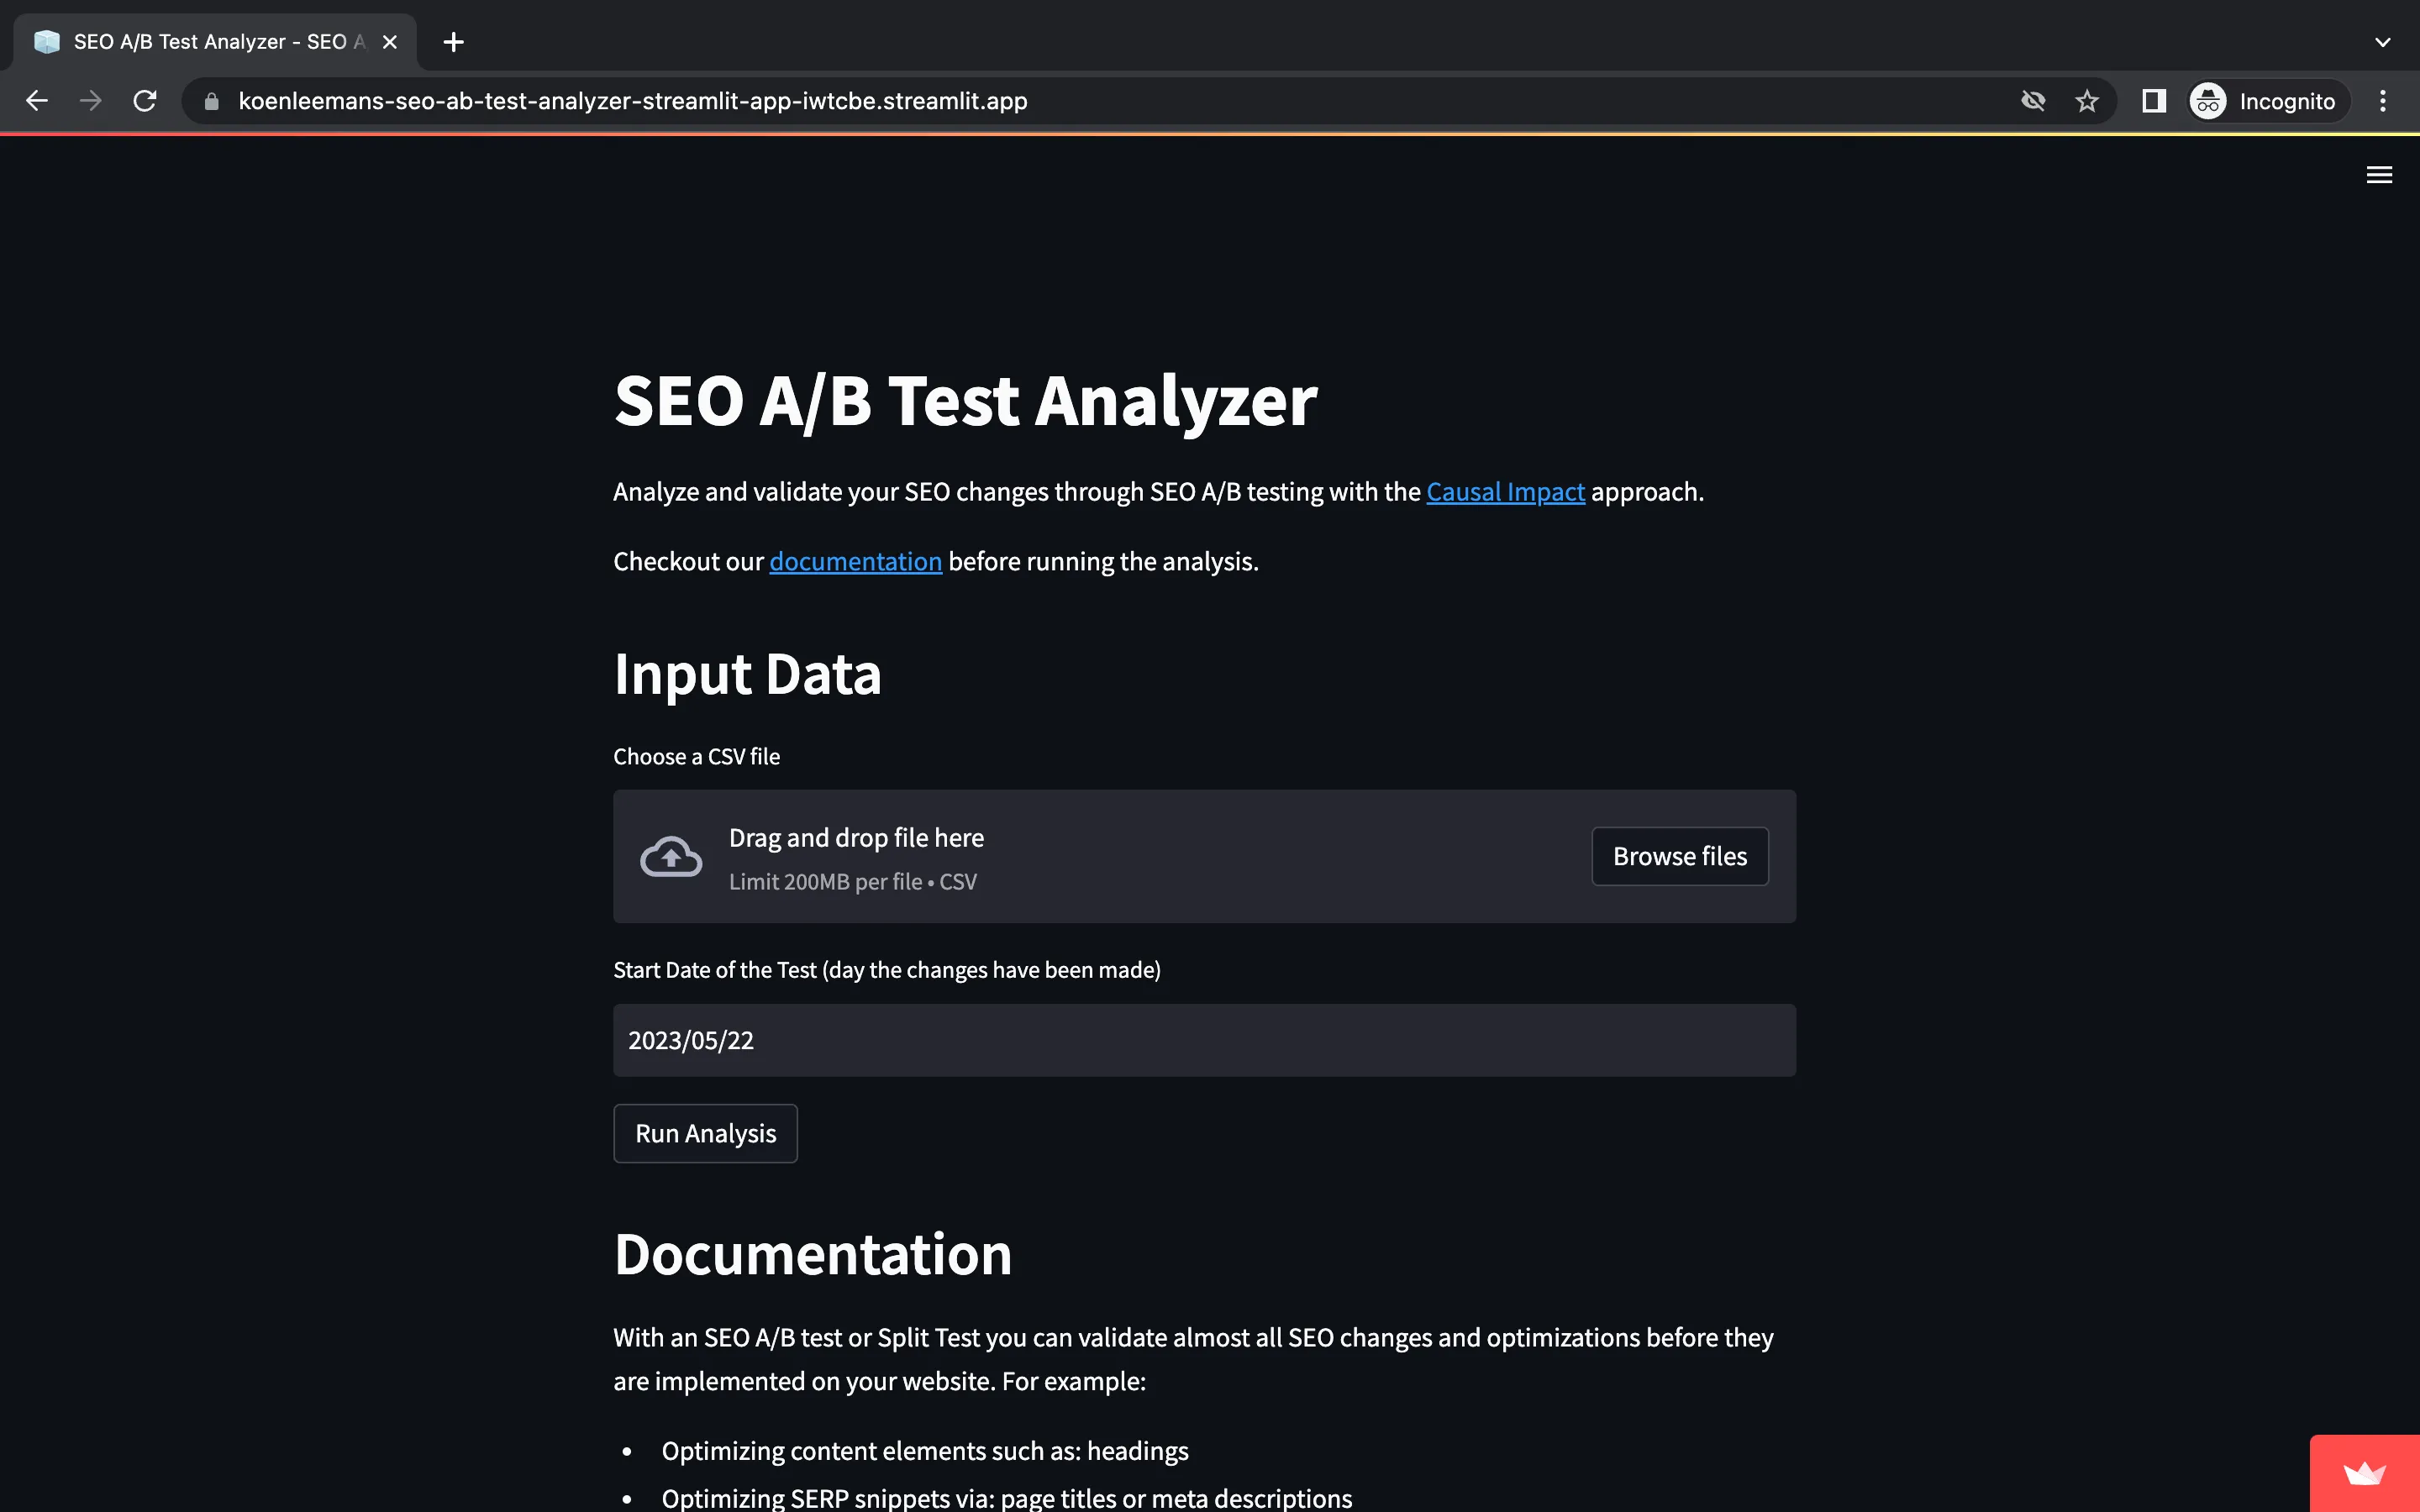 SEO A/B Test Analyzer